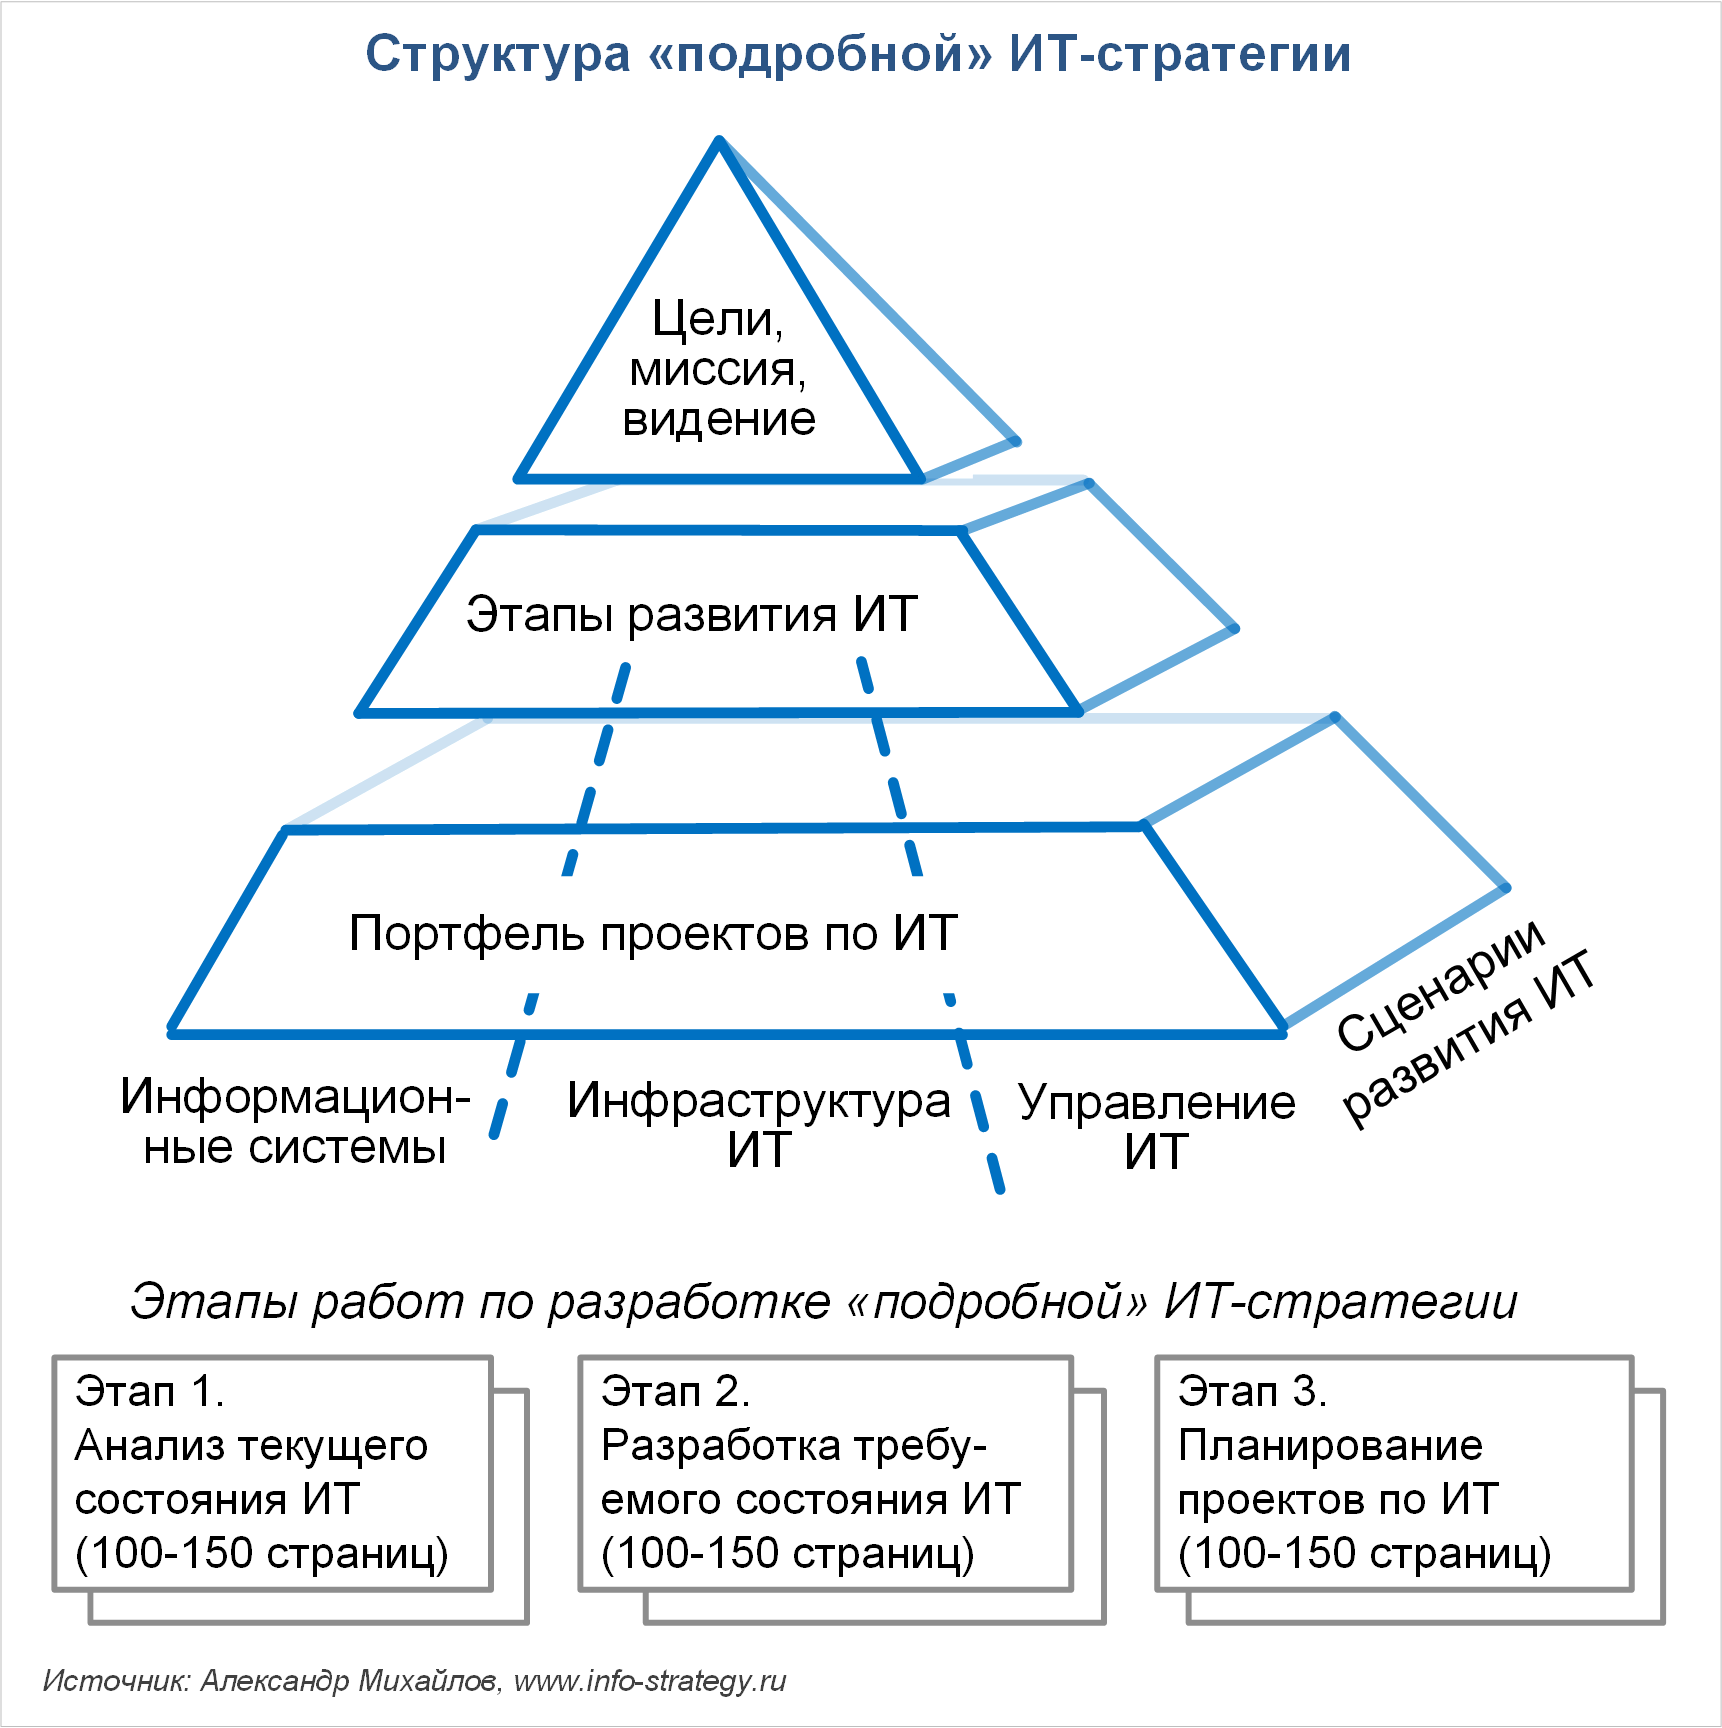 Структура «подробной» ИТ-стратегии Источник: Александр Михайлов, сайт www.info-strategy.ru